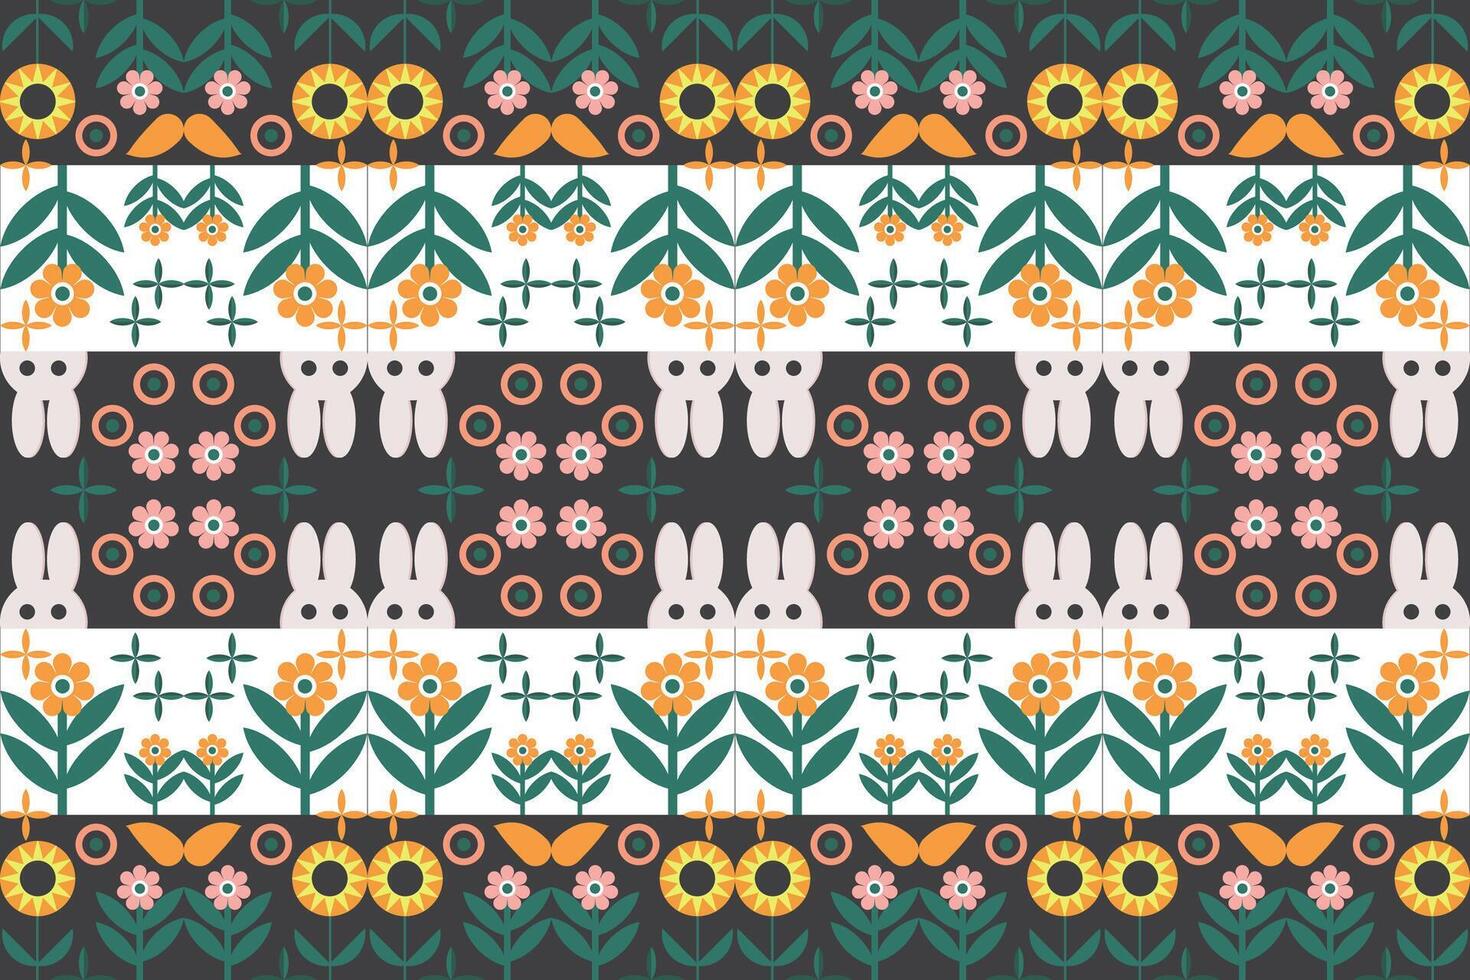 géométrique modèle avec fleurs et feuilles conception Orange vert Jaune gris conception pour impression textile tapis vecteur